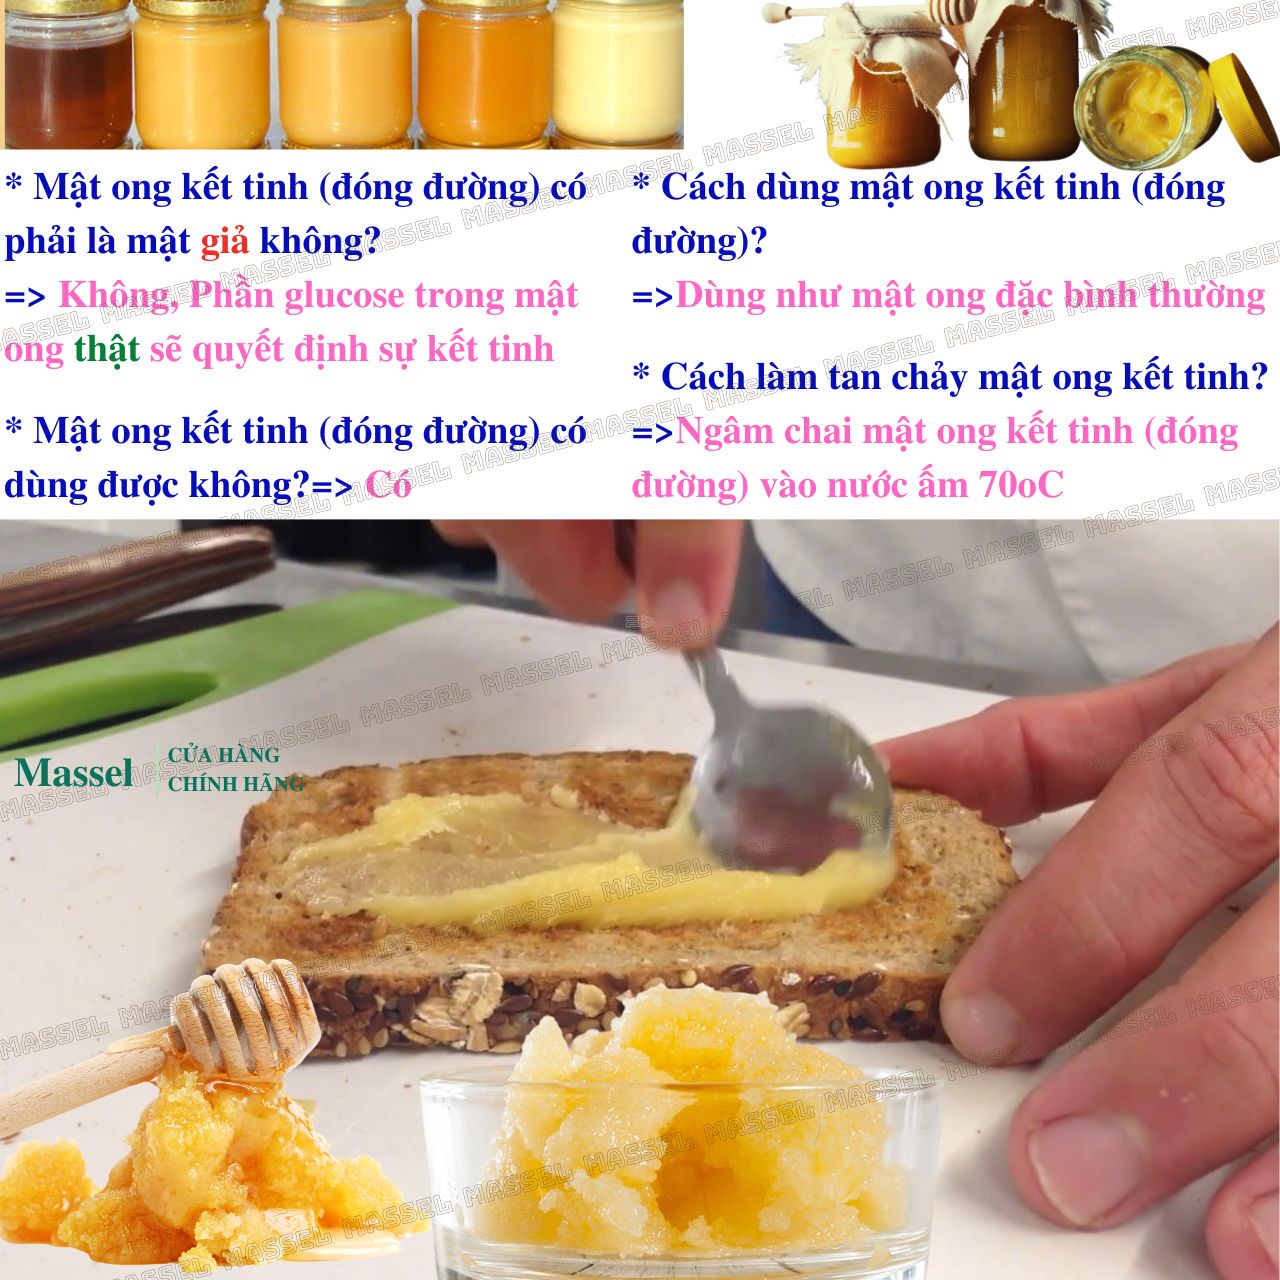 Mật ong hoa Manuka Honey Blend 30+ MG Beeproducts tăng sức đề kháng, giảm ho, viên họng, dưỡng ẩm da và môi cang bóng mịn màng- Massel Official (500gr)